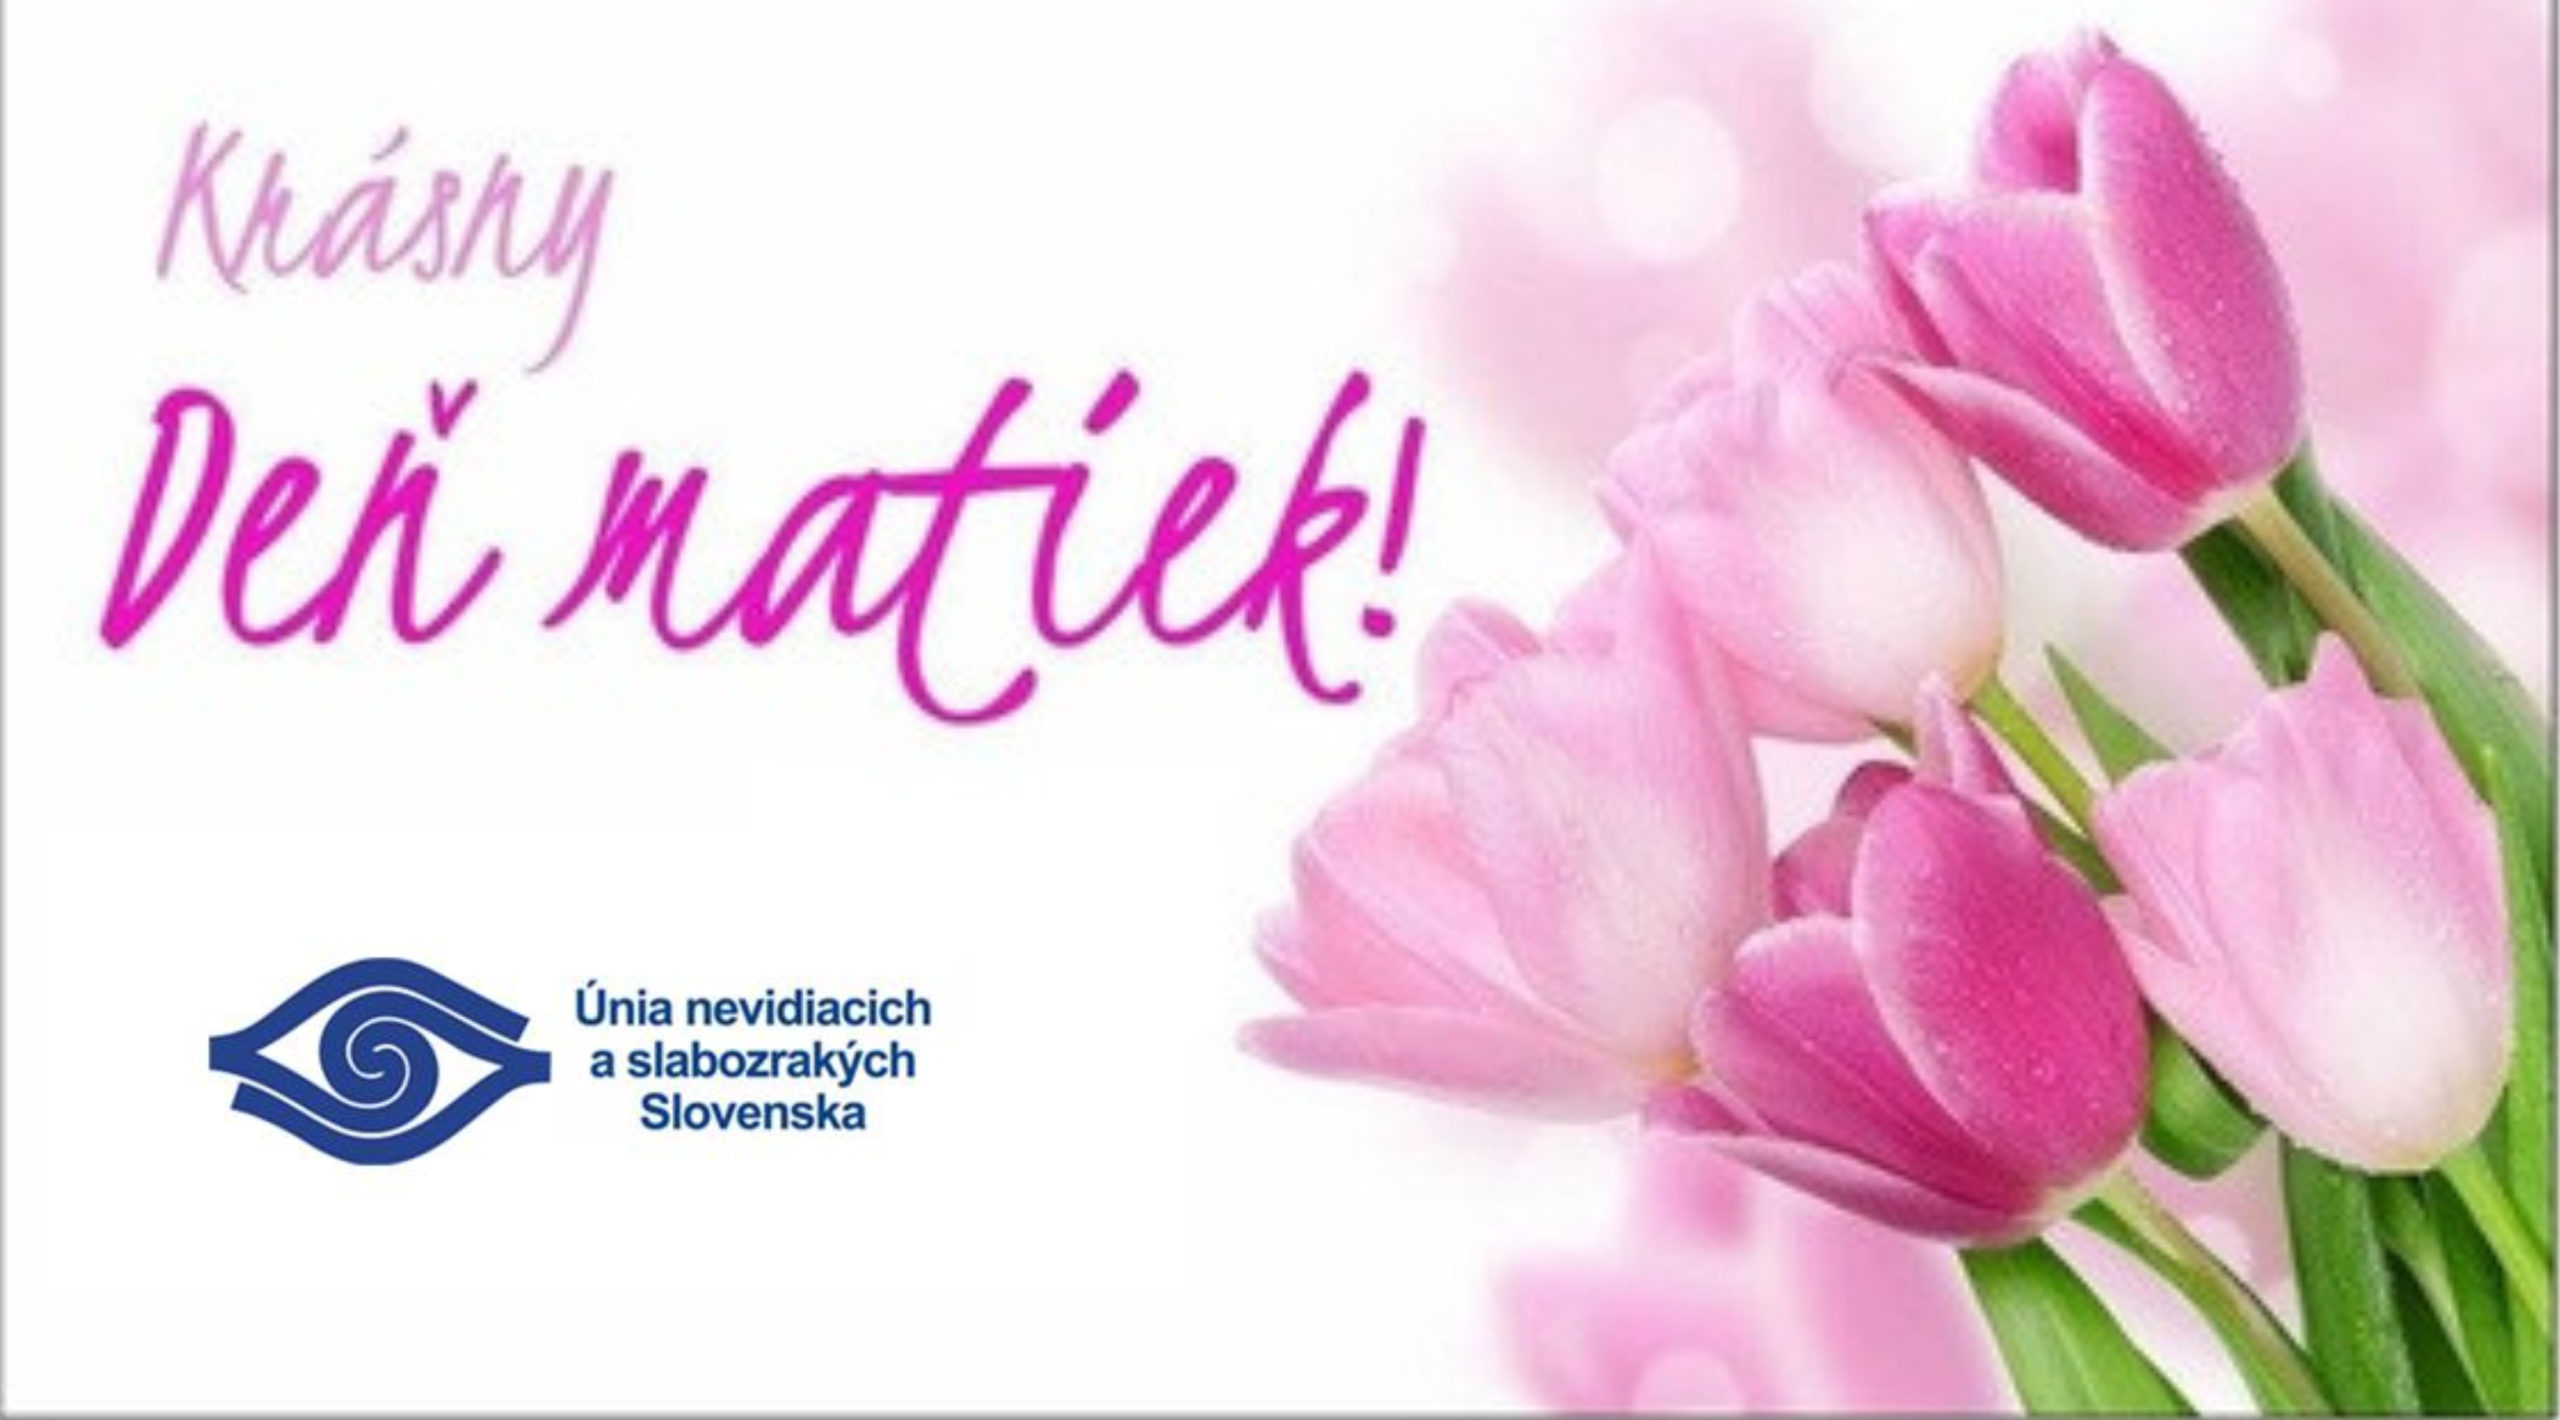 Na obrázku sú kvety a nadpis Krásny deň matiek. Pod tým je logo UNSS s nápisom Únia nevidiacich a slabozrakých Slovenska